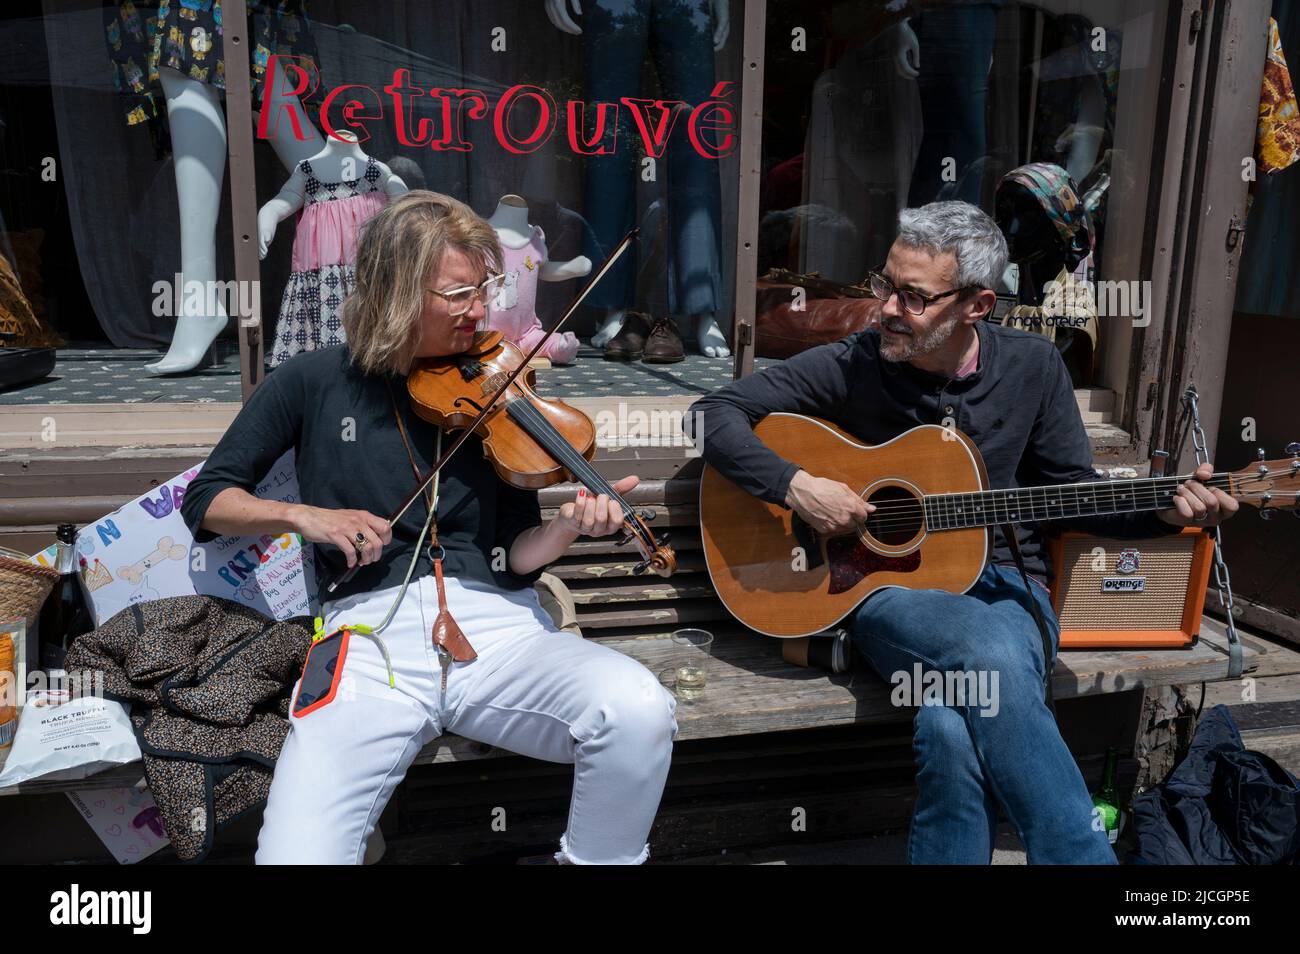 Londres, Hackney. Wilton Way. Los músicos tocan fuera de la tienda de ropa vintage retrouvé durante una fiesta en la calle Jubilee Foto de stock